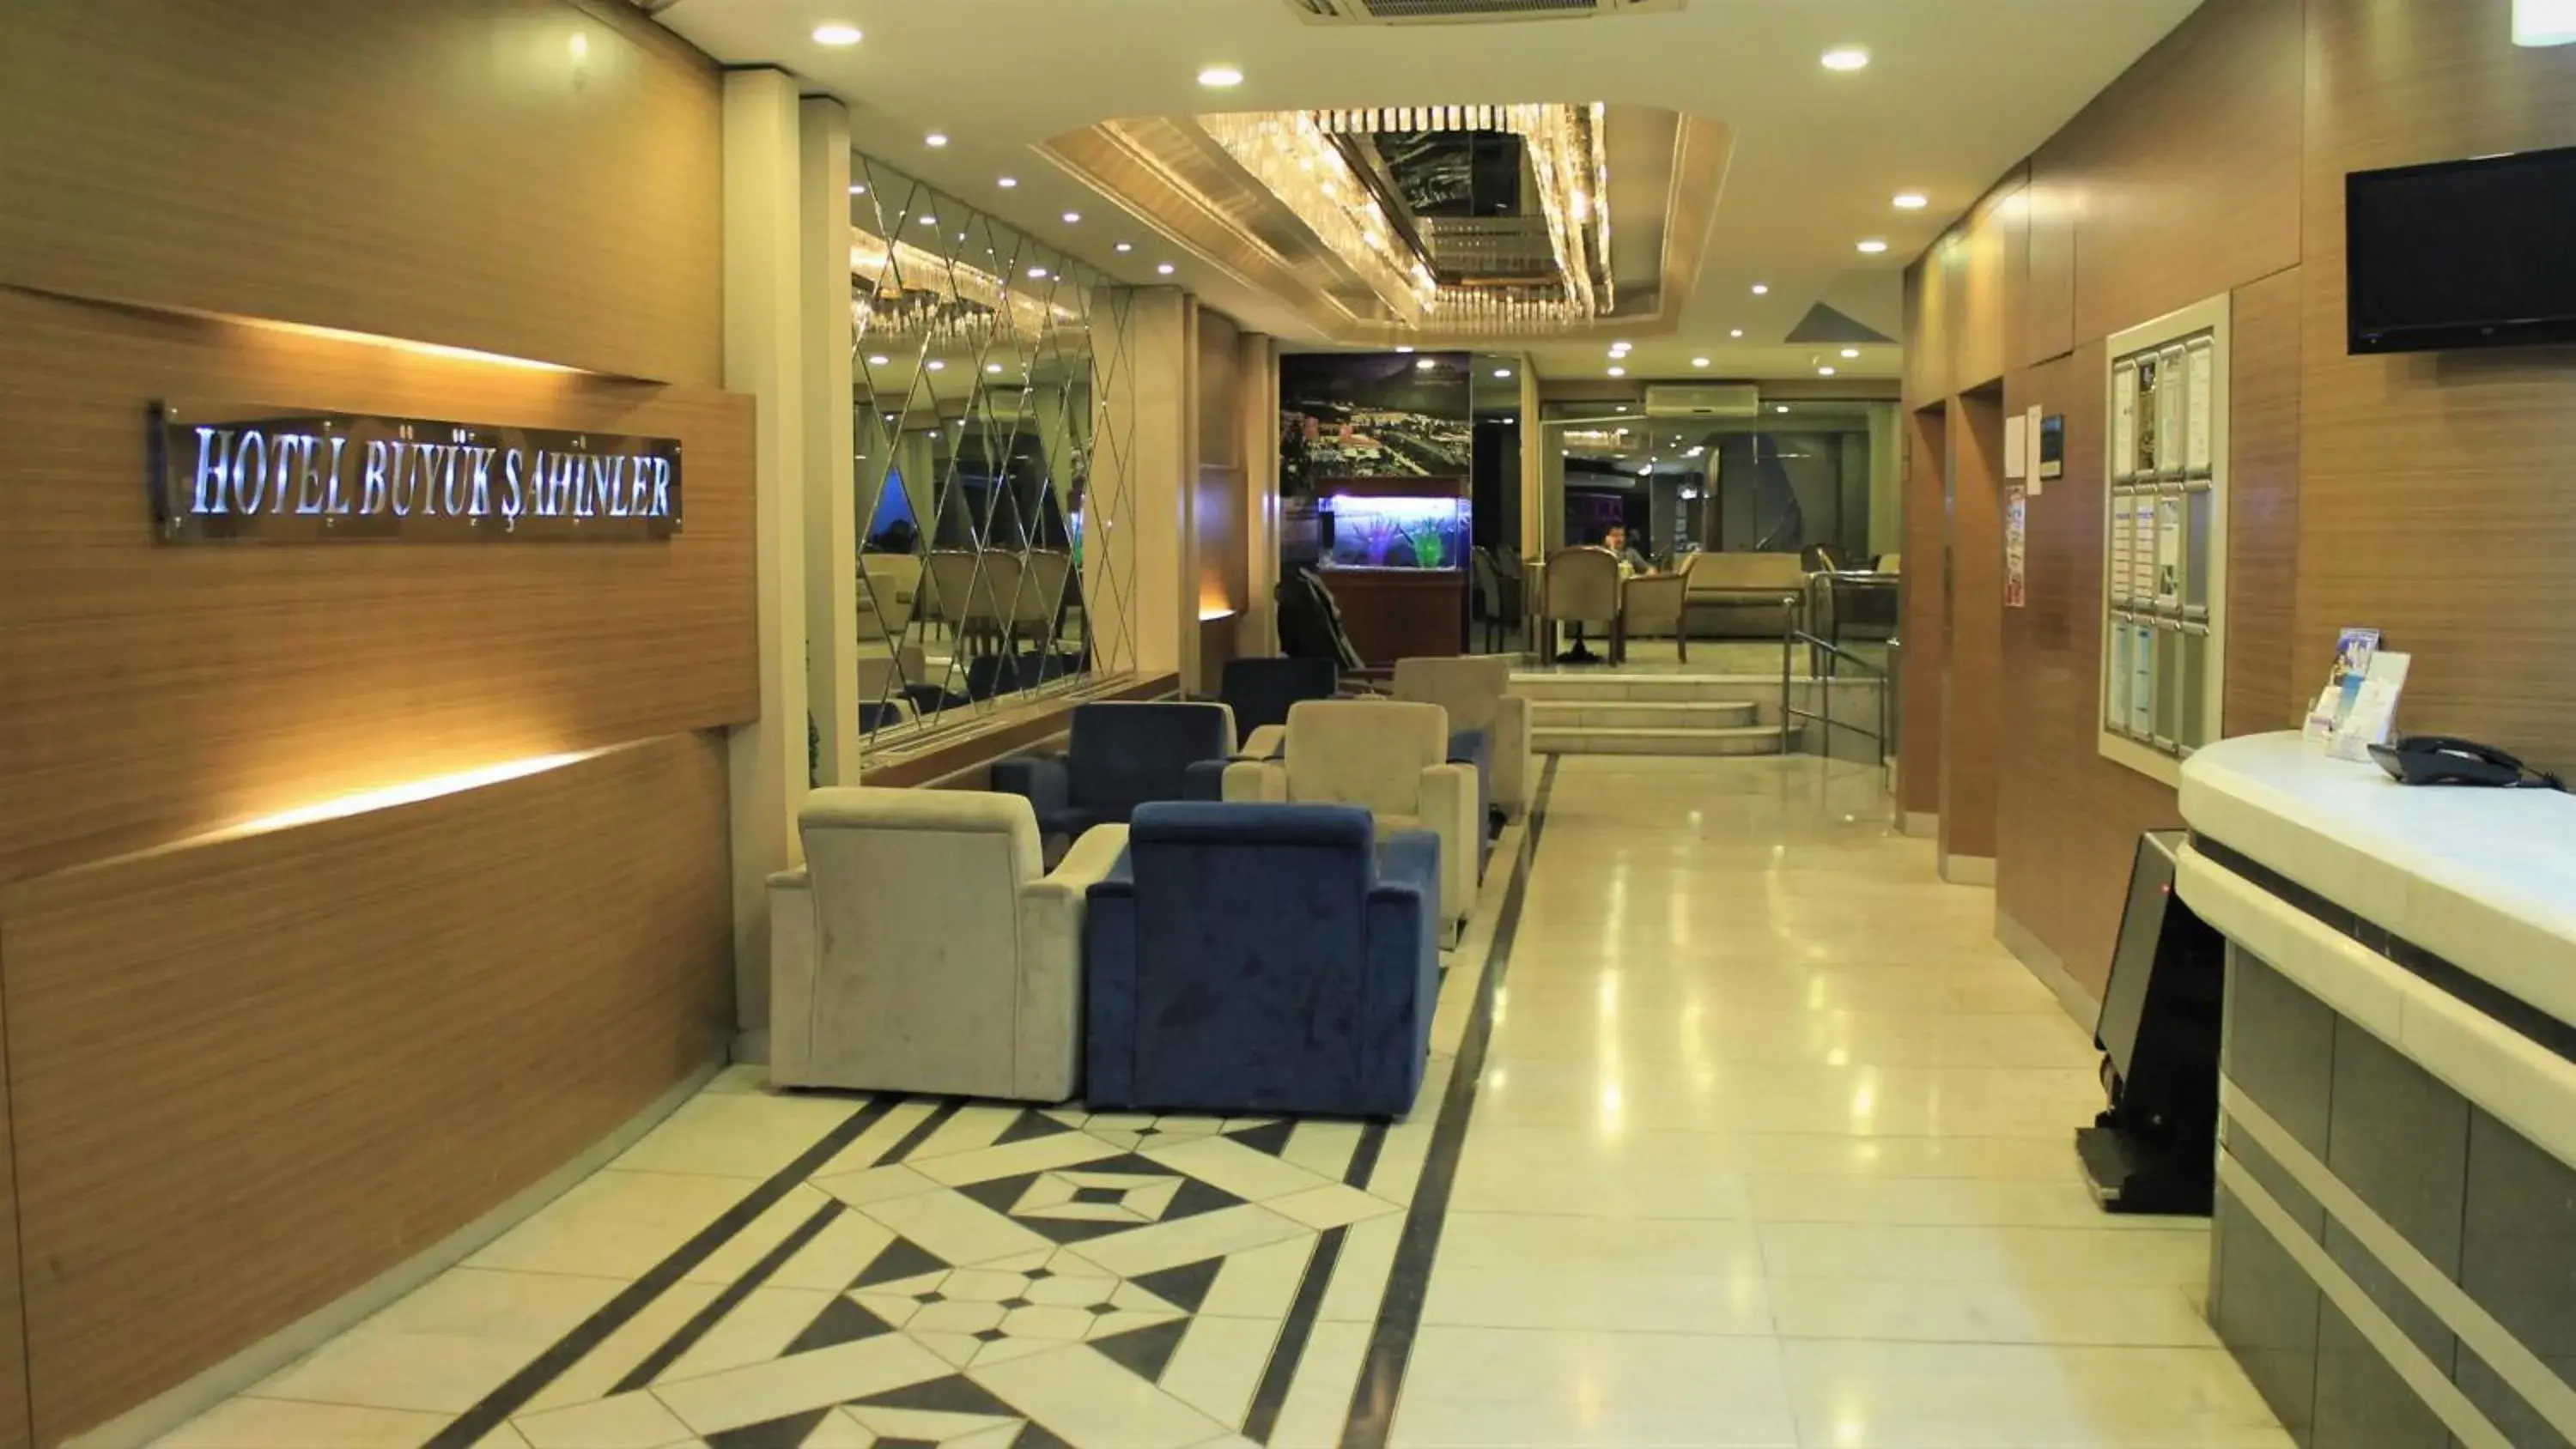 Lobby or reception, Lobby/Reception in Hotel Buyuk Sahinler